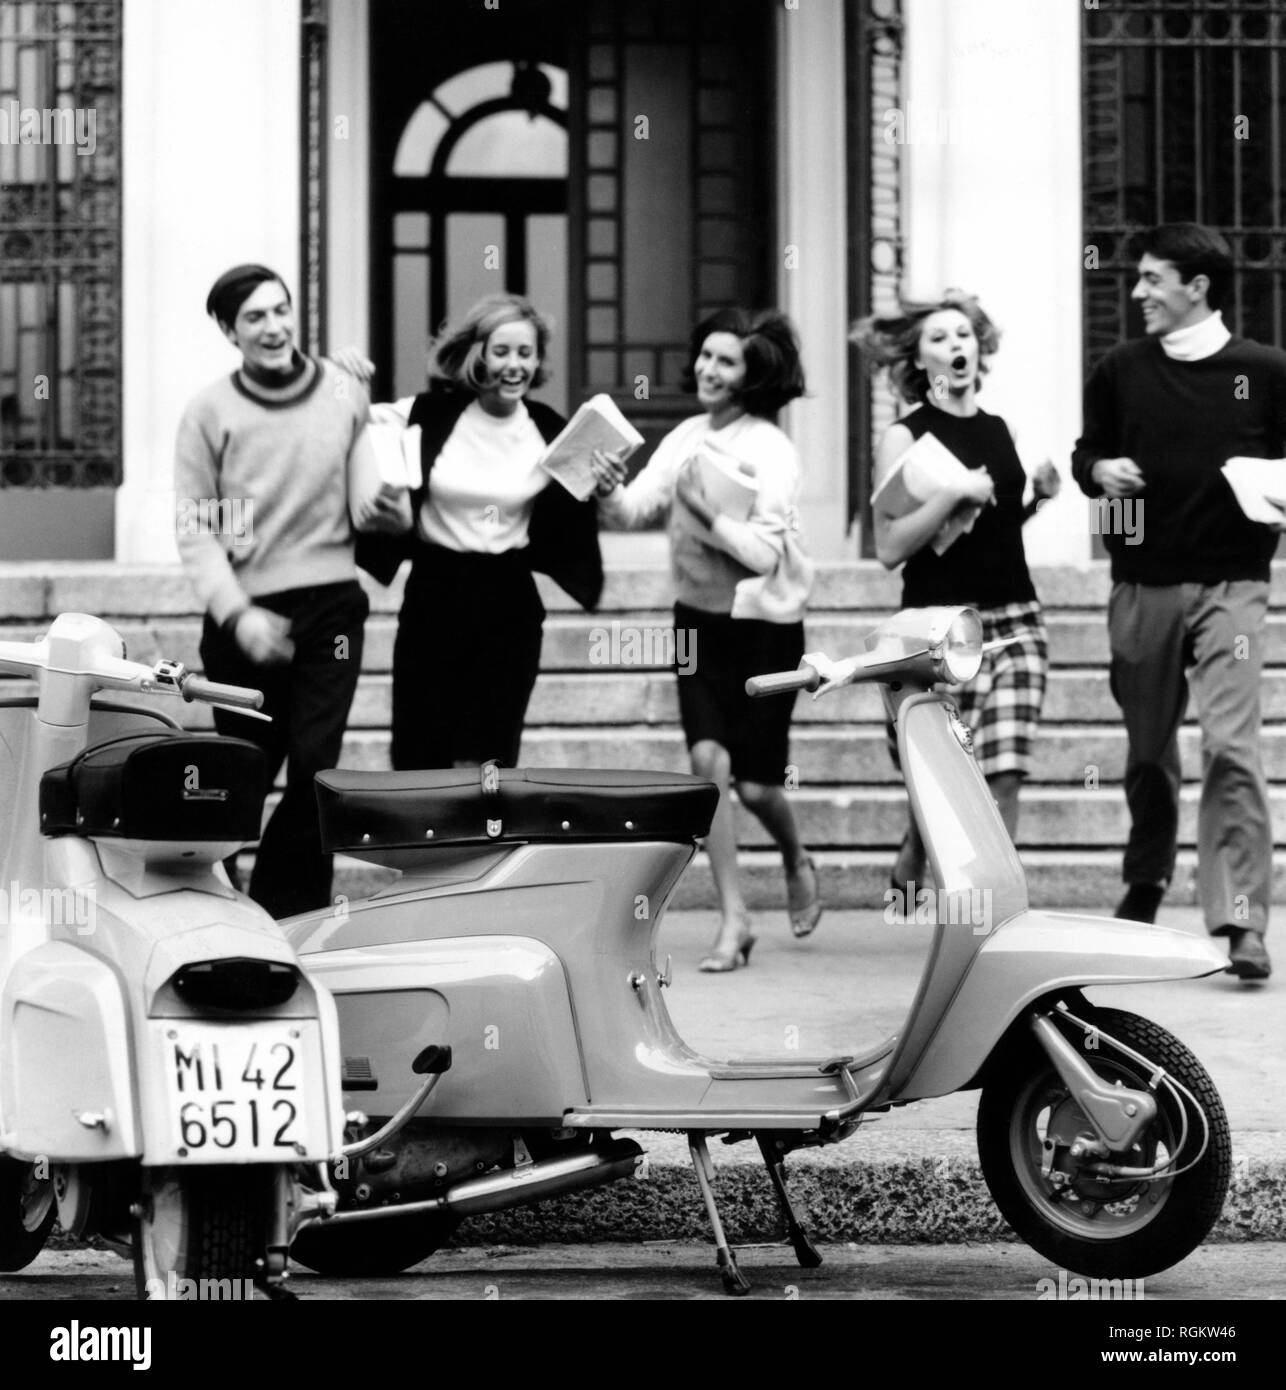 Los jóvenes fuera de la escuela, Italia 1964 Foto de stock